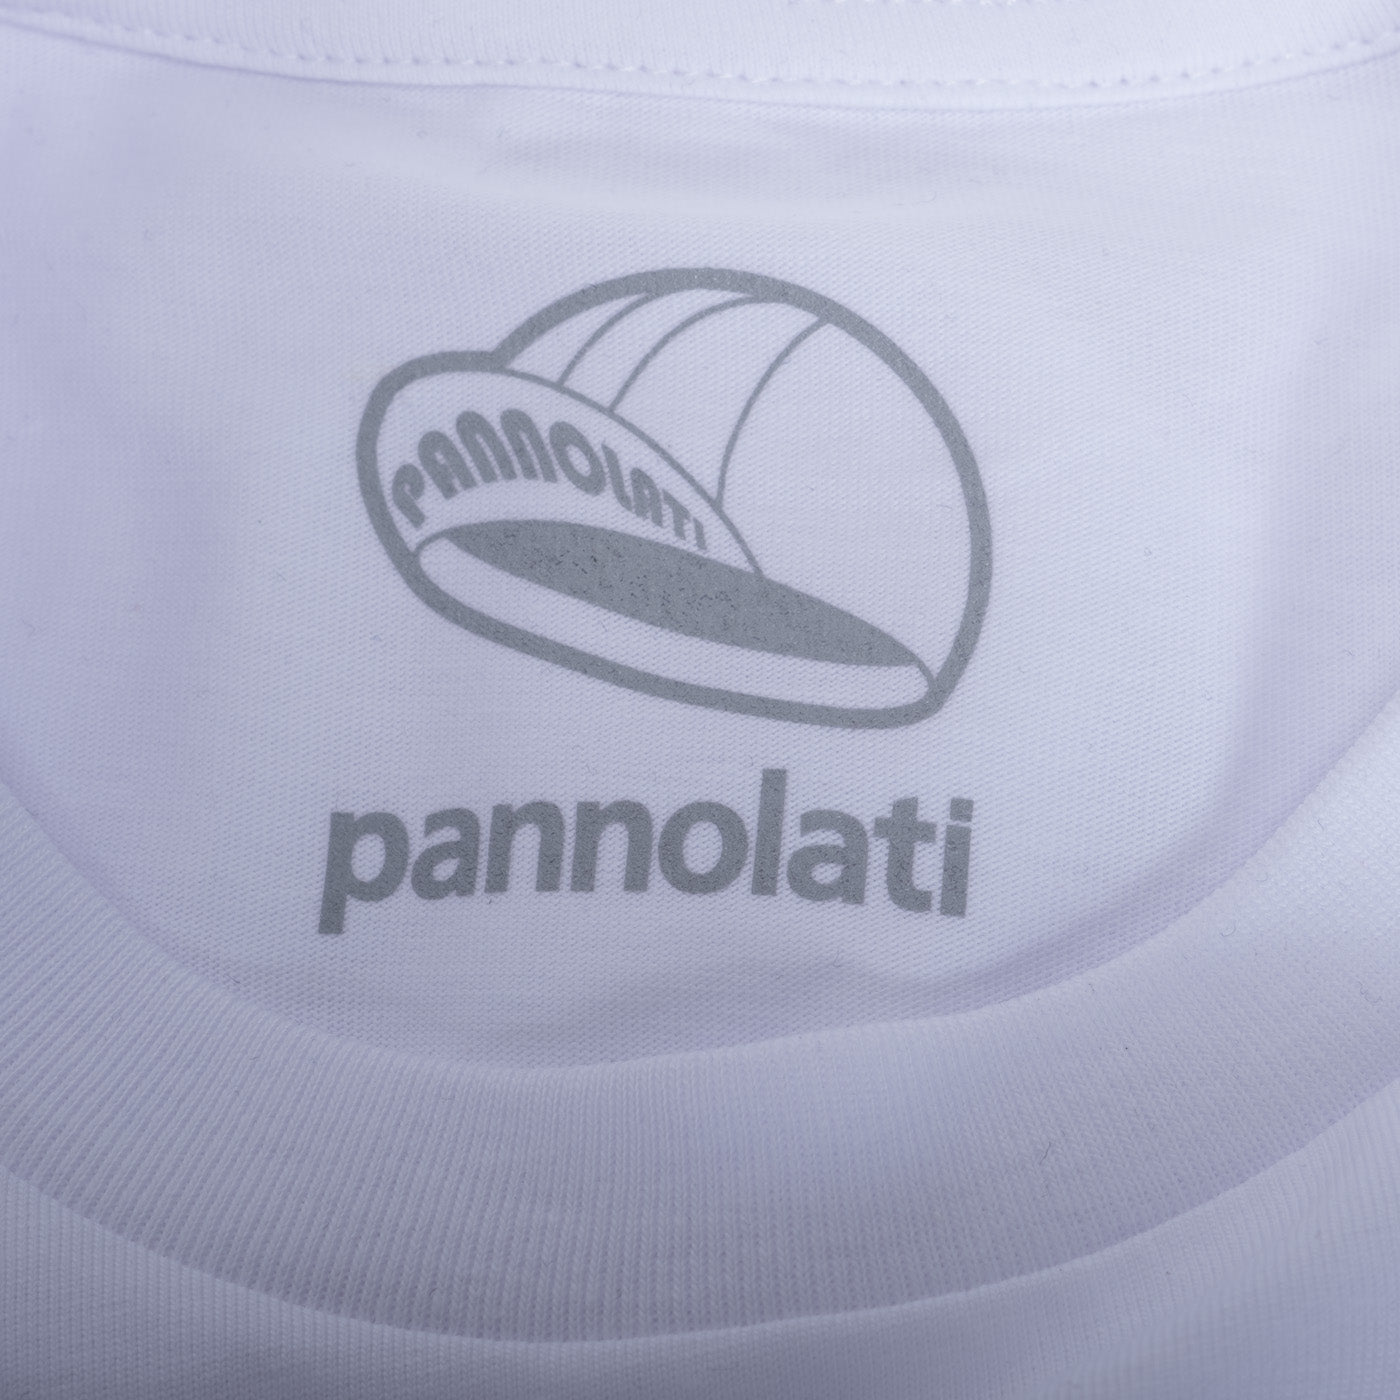 T-shirt Pannolati Logo